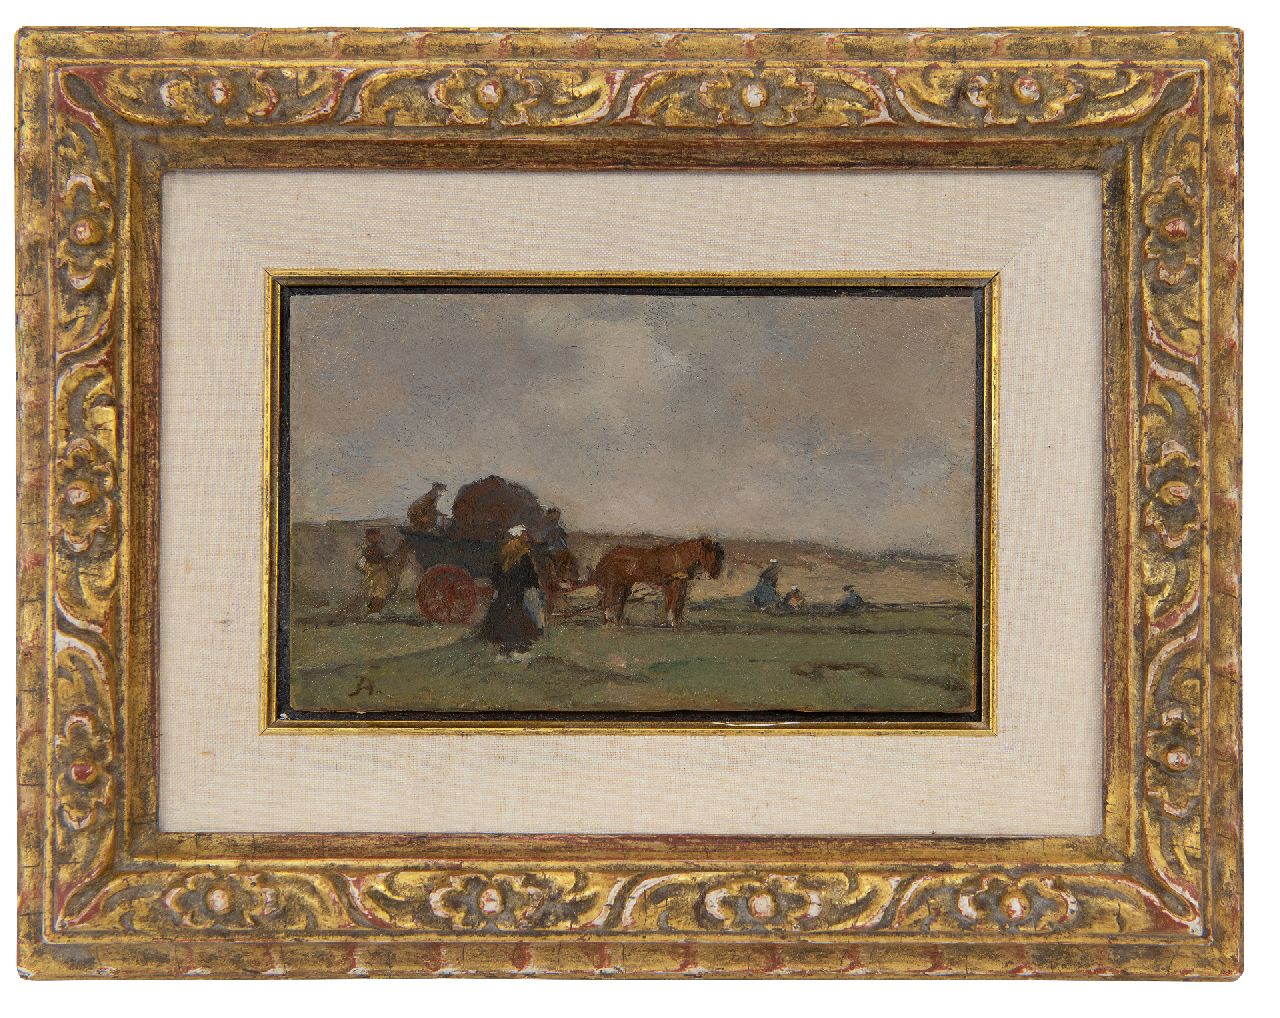 Akkeringa J.E.H.  | 'Johannes Evert' Hendrik Akkeringa | Schilderijen te koop aangeboden | Netten boeten achter de duinen, olieverf op paneel 7,5 x 12,4 cm, gesigneerd linksonder met initiaal